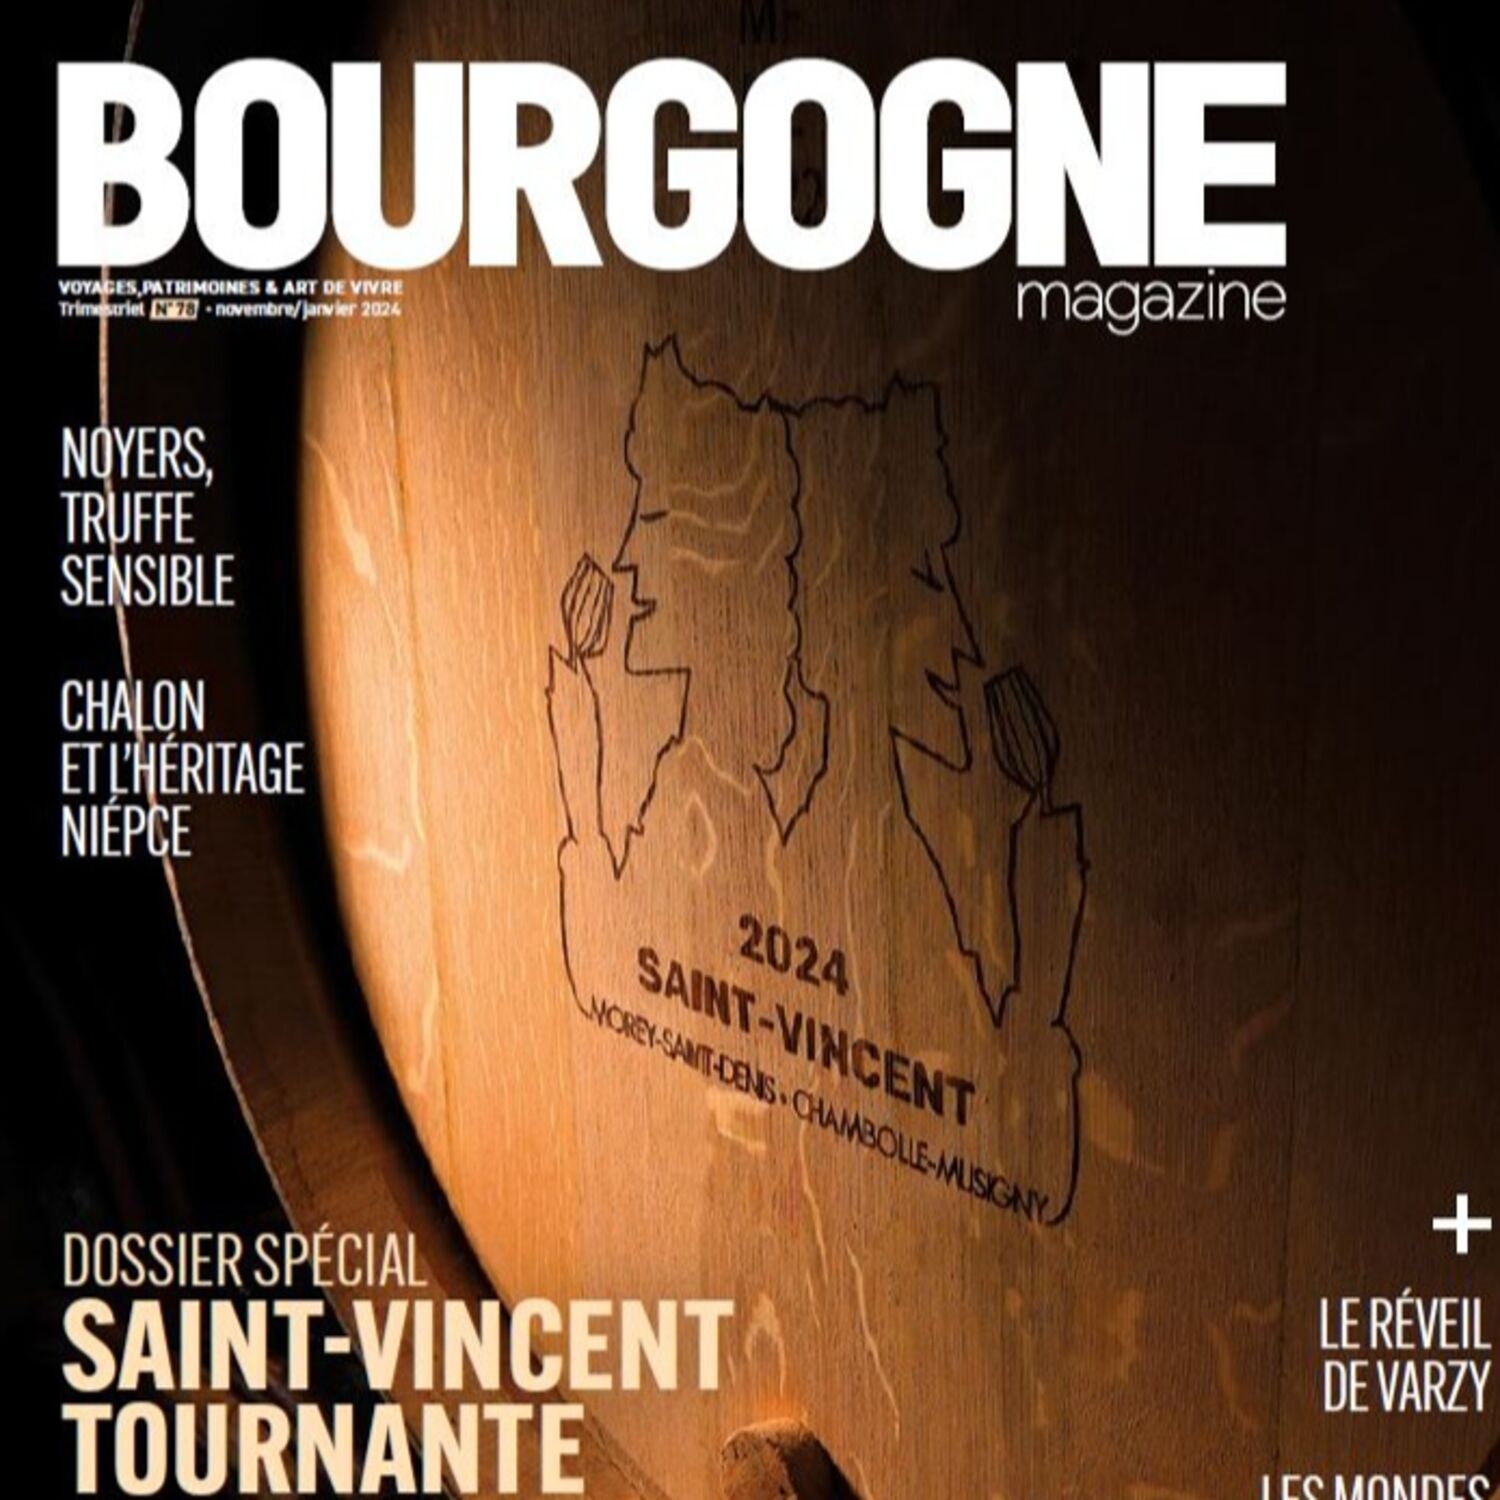 La Saint-Vincent tournante à la Une de Bourgogne magazine